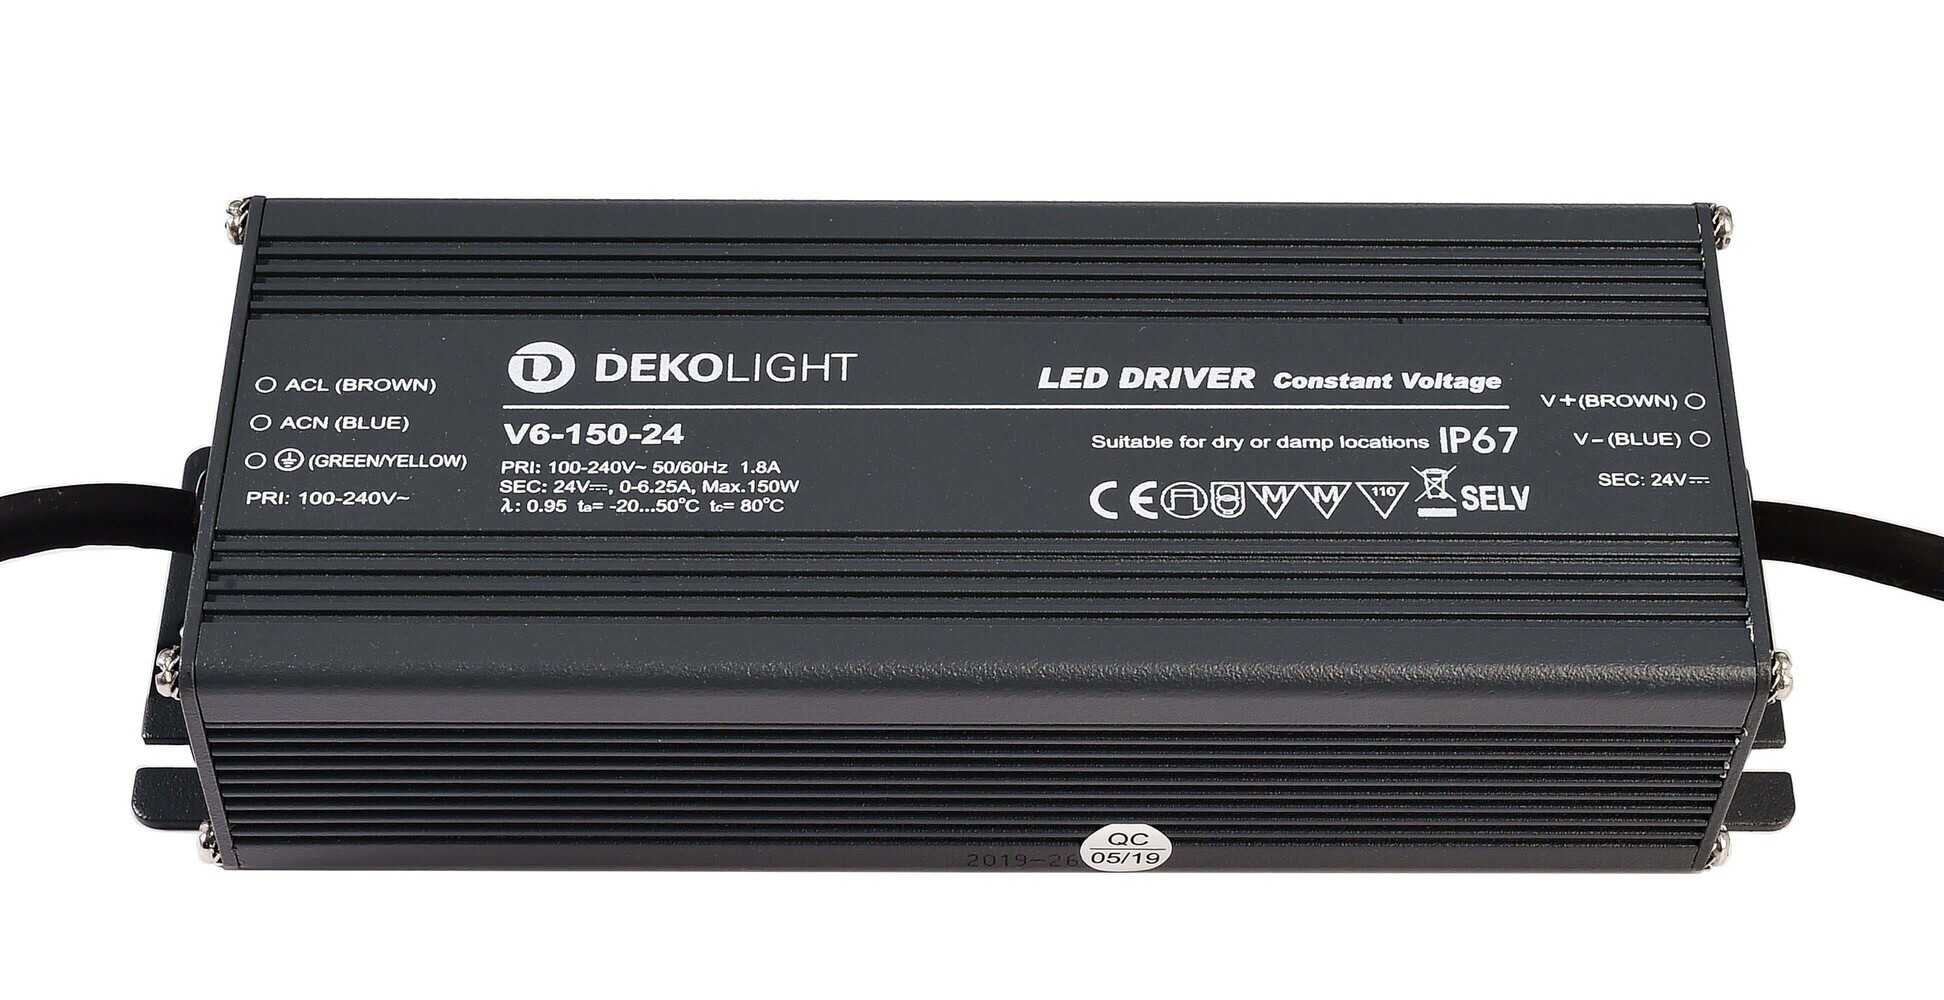 Hochwertiges und leistungsfähiges LED Netzteil von der Marke Deko-Light